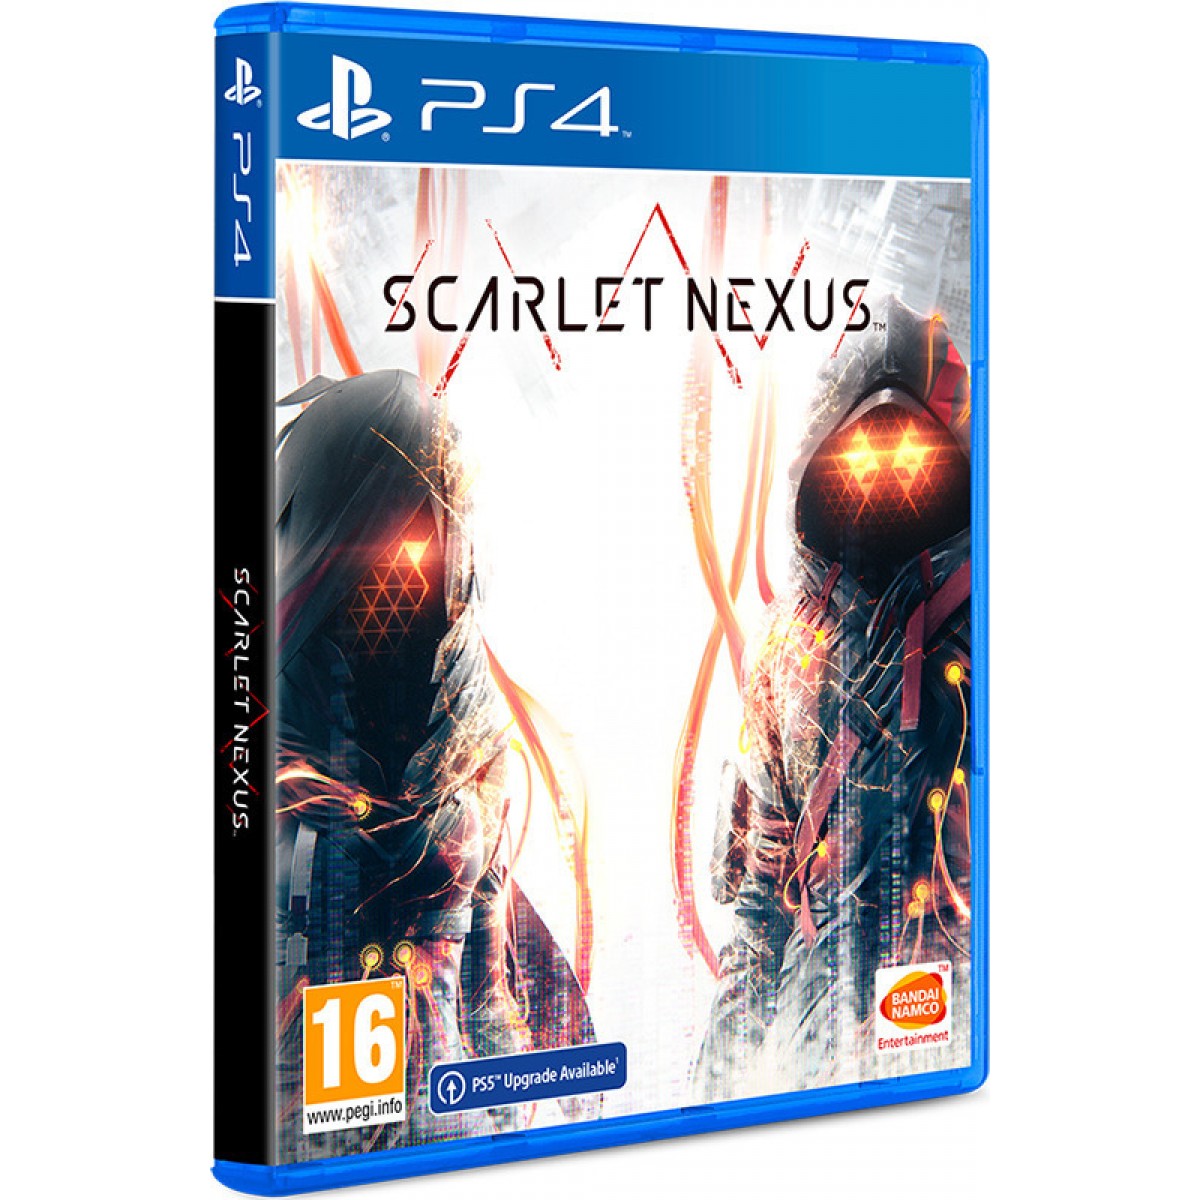 PS4 SCARLET NEXUS GAME